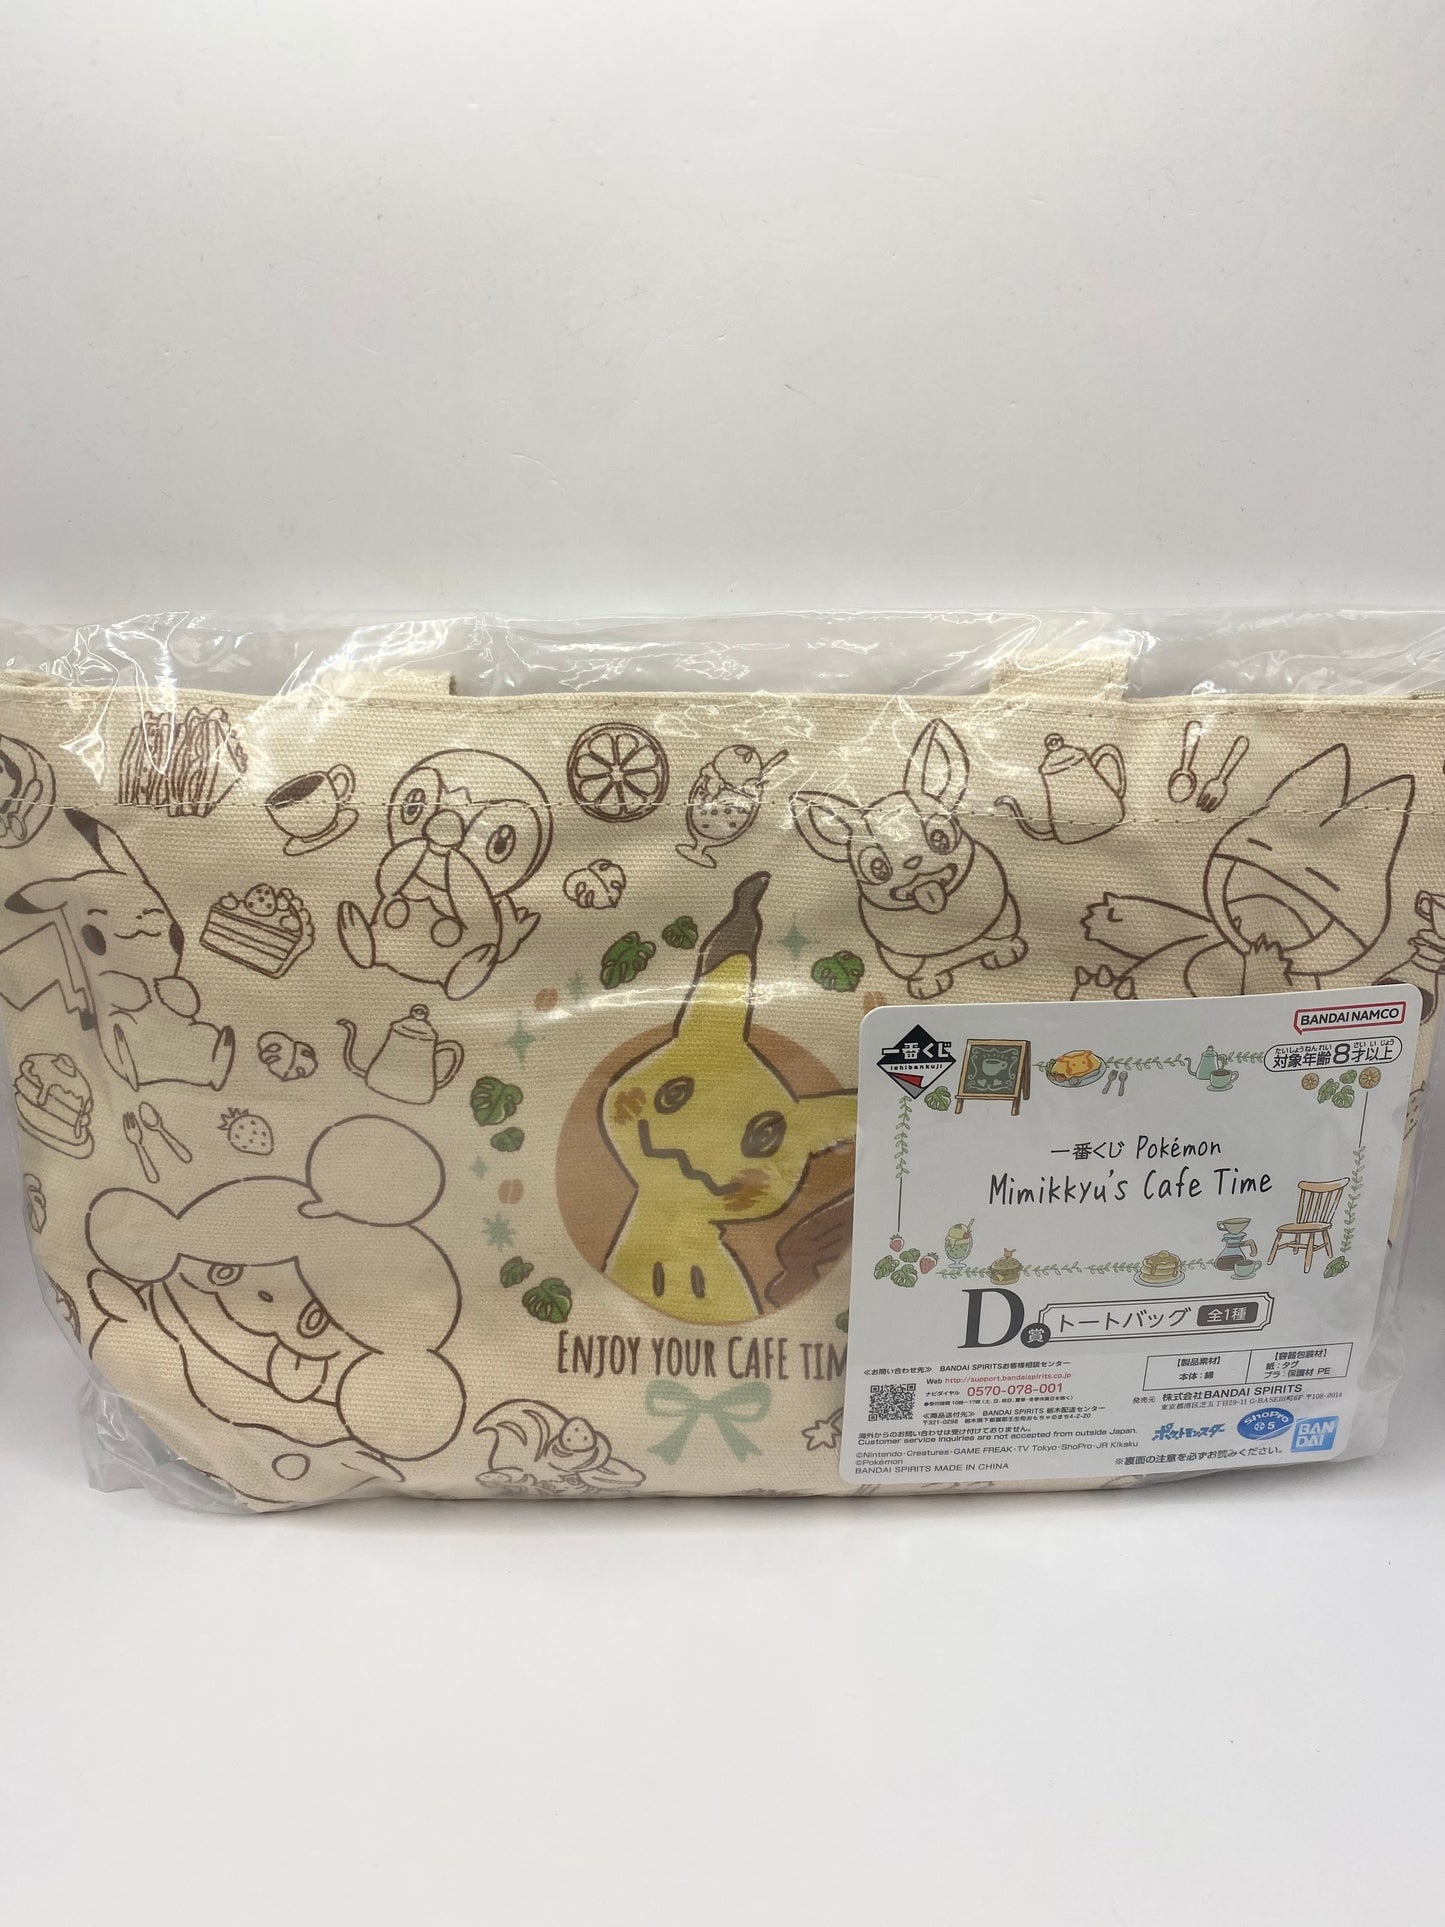 Pokémon Mimikyu's Mimigma Cafe Time Tote Bag Kawaii Anime Manga W12" x H8"